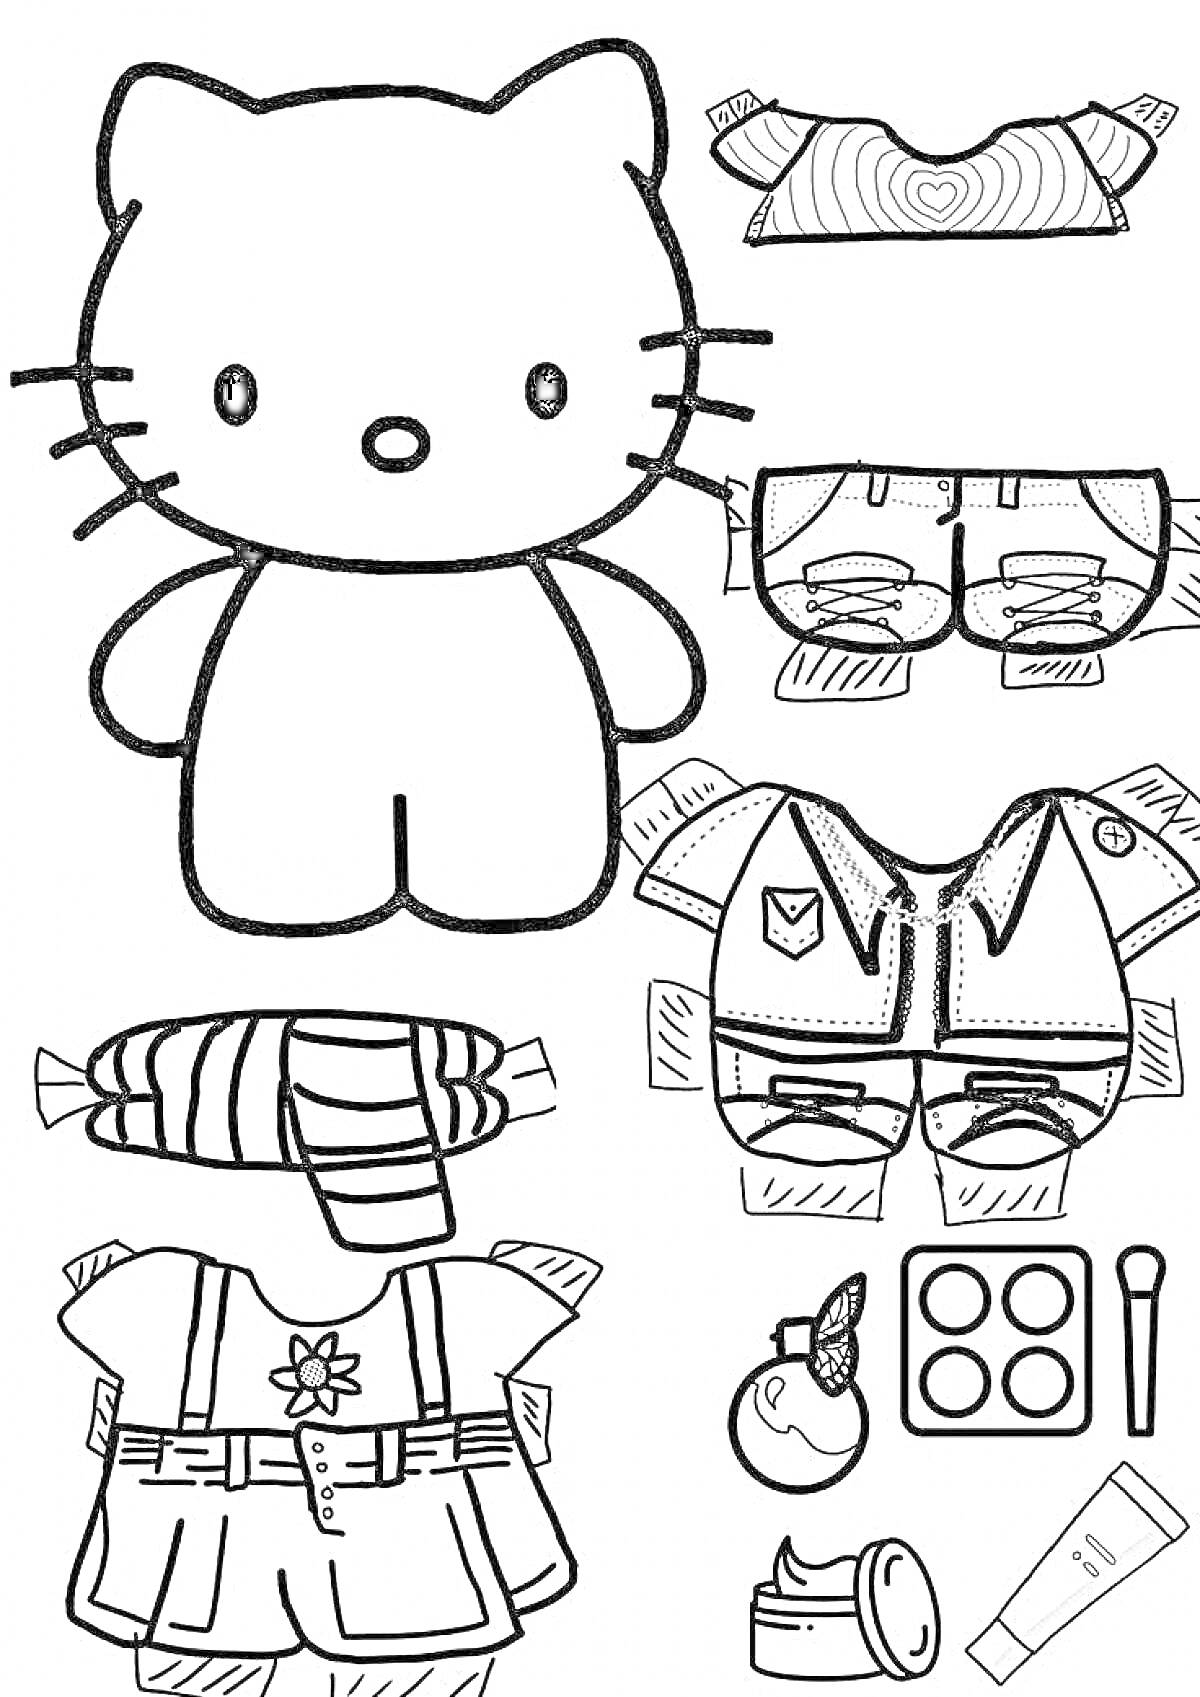 Раскраска Hello Kitty с одеждой и аксессуарами - футболка с сердцем, шорты с карманами, куртка с эмблемой, платье с цветком, шарф в полоску, духи, палетка теней для век, крем для лица, тюбик с кремом